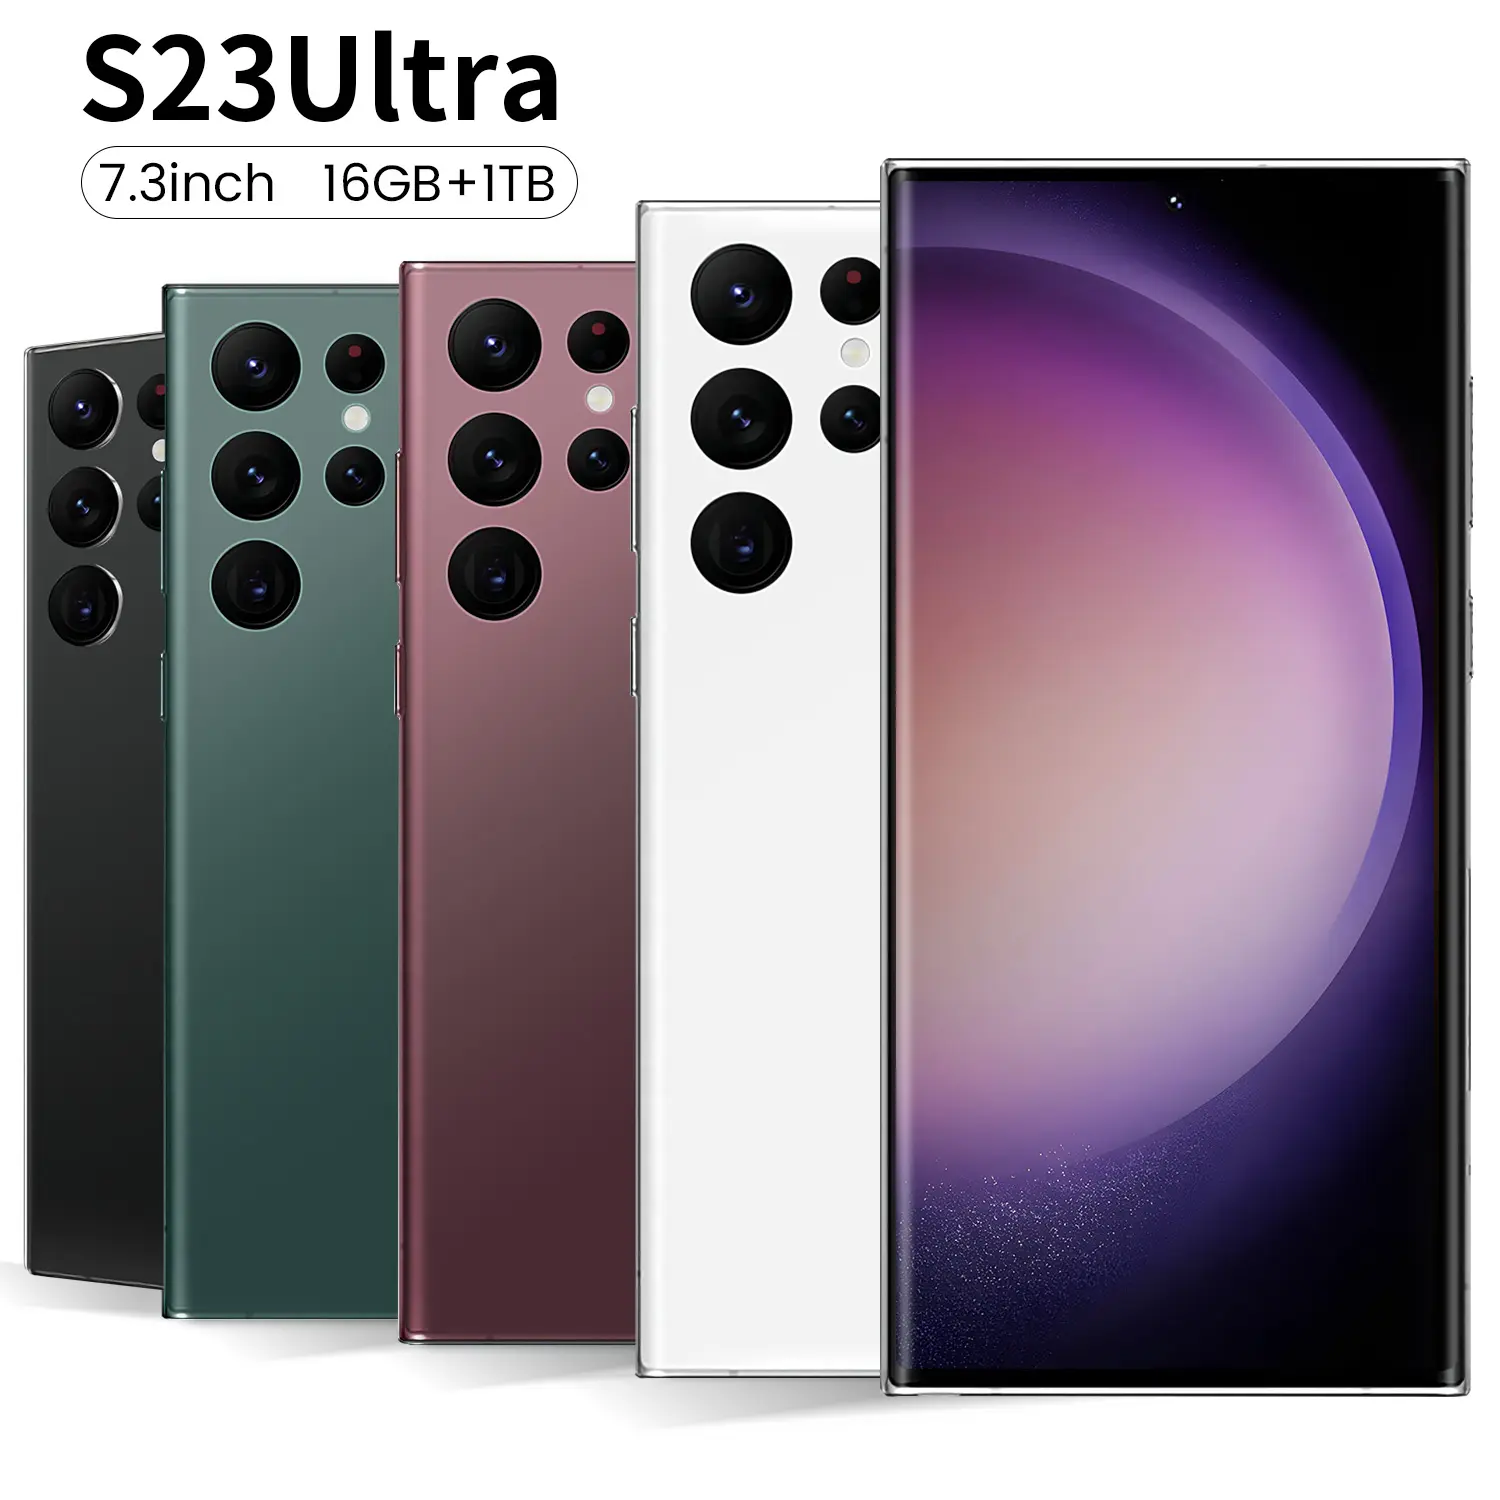 Teléfono móvil inteligente Android de alta calidad, superventas, teléfono inteligente S23 ULTRA Original, versión Global, teléfono con tarjeta dual